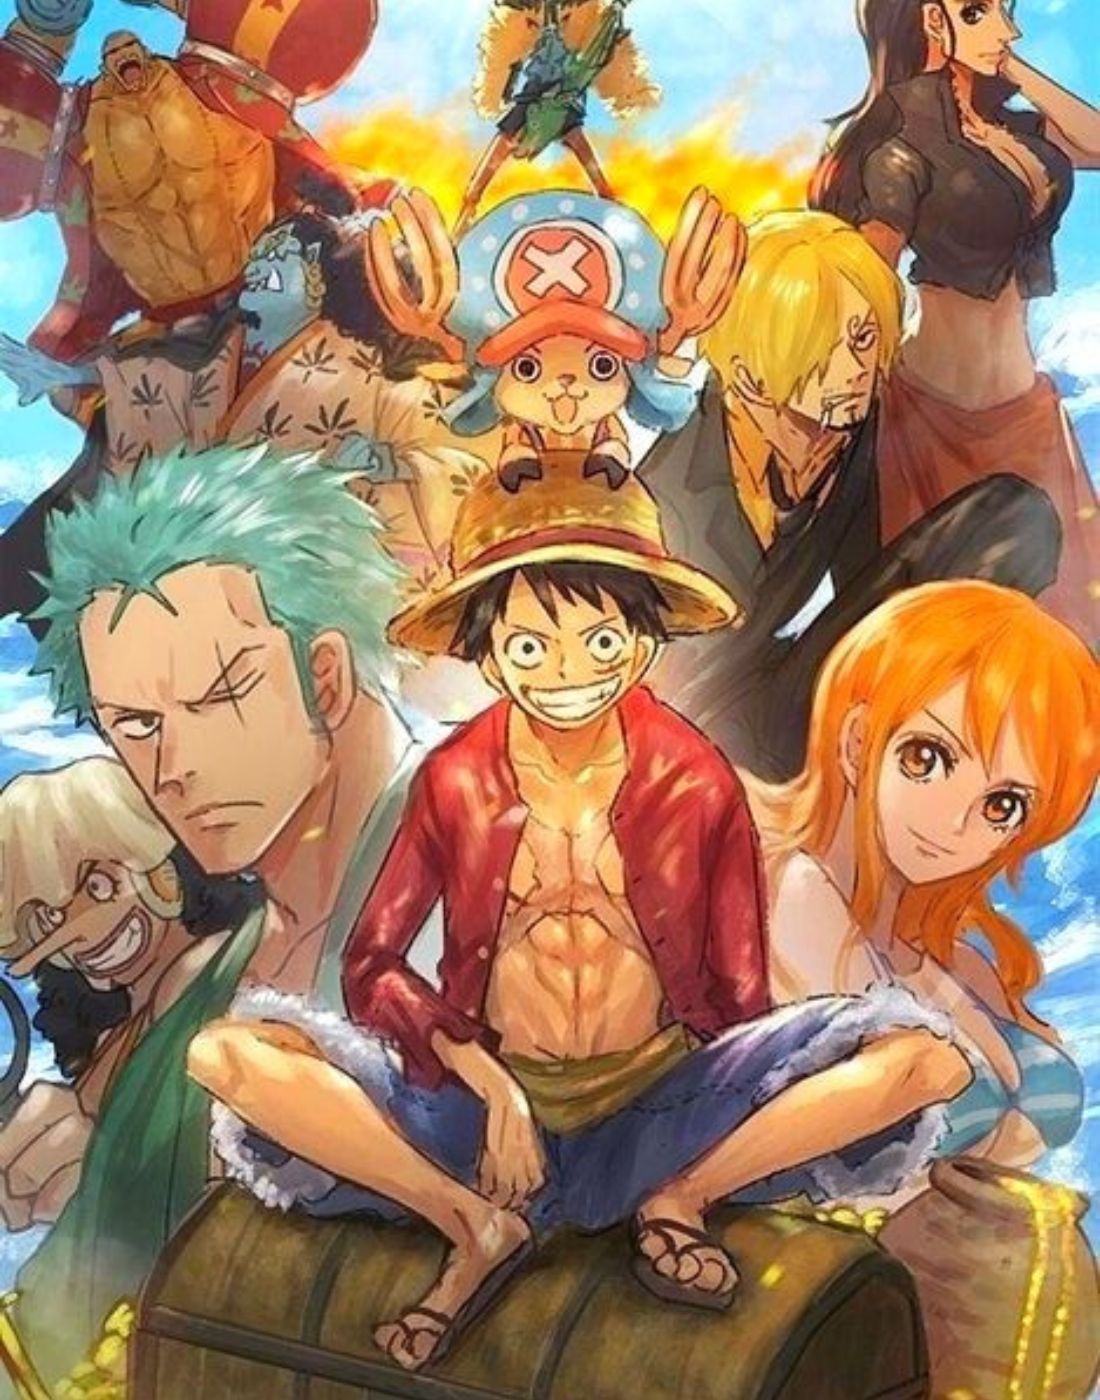 Dakimakuar One Piece